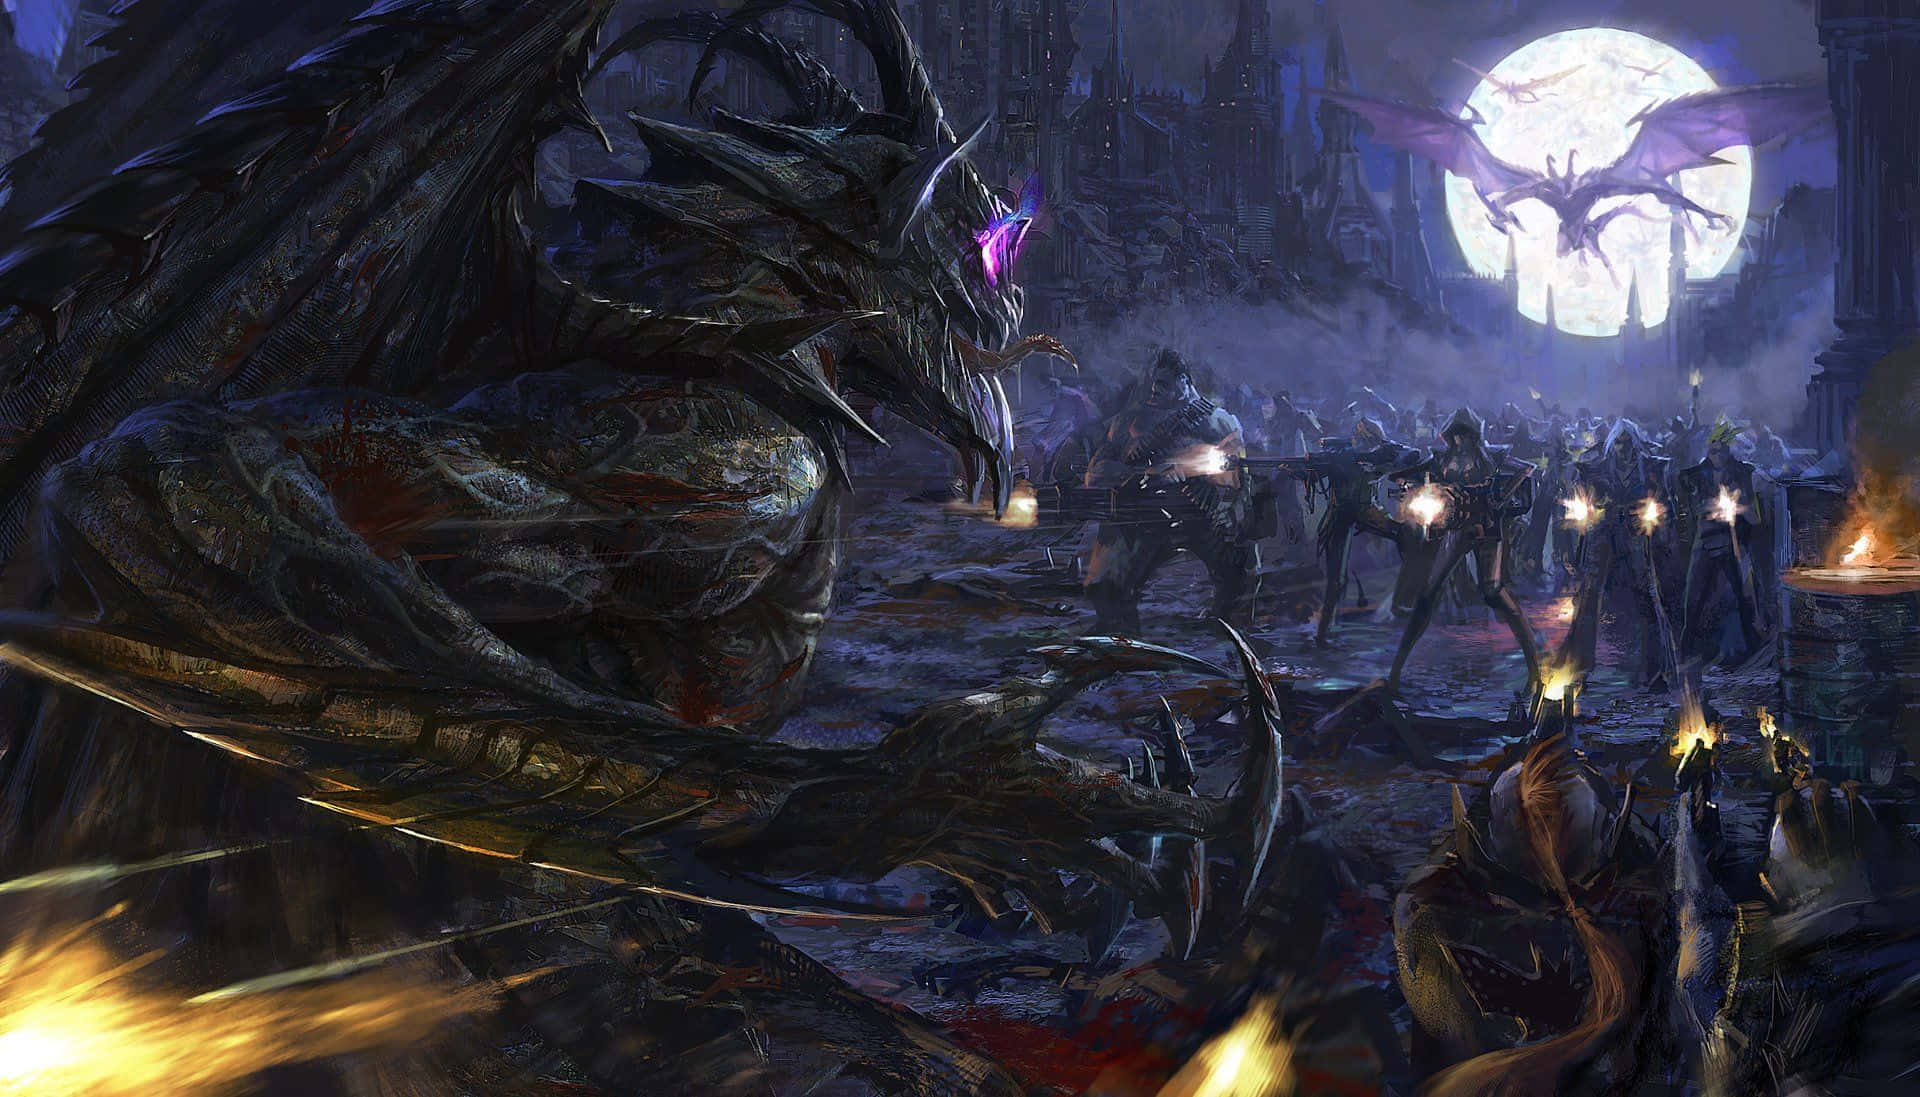 Imágenesde Monstruos Aterradores De Demonios Dragones.